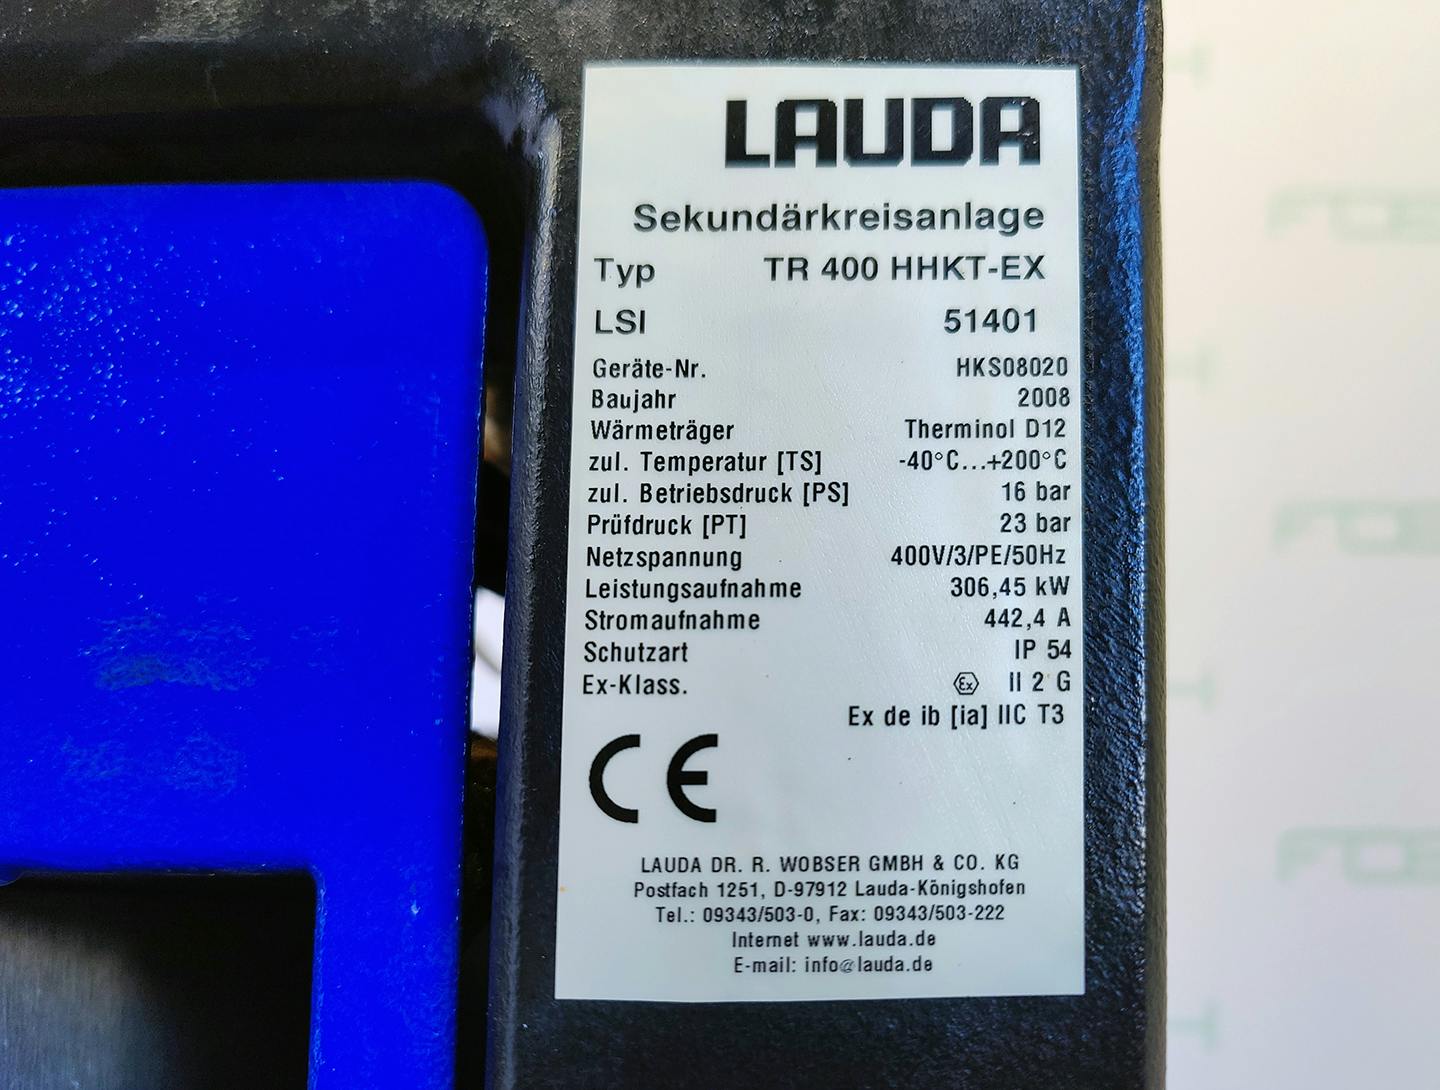 Lauda TR400 HKKT-EX - Atemperador - image 15